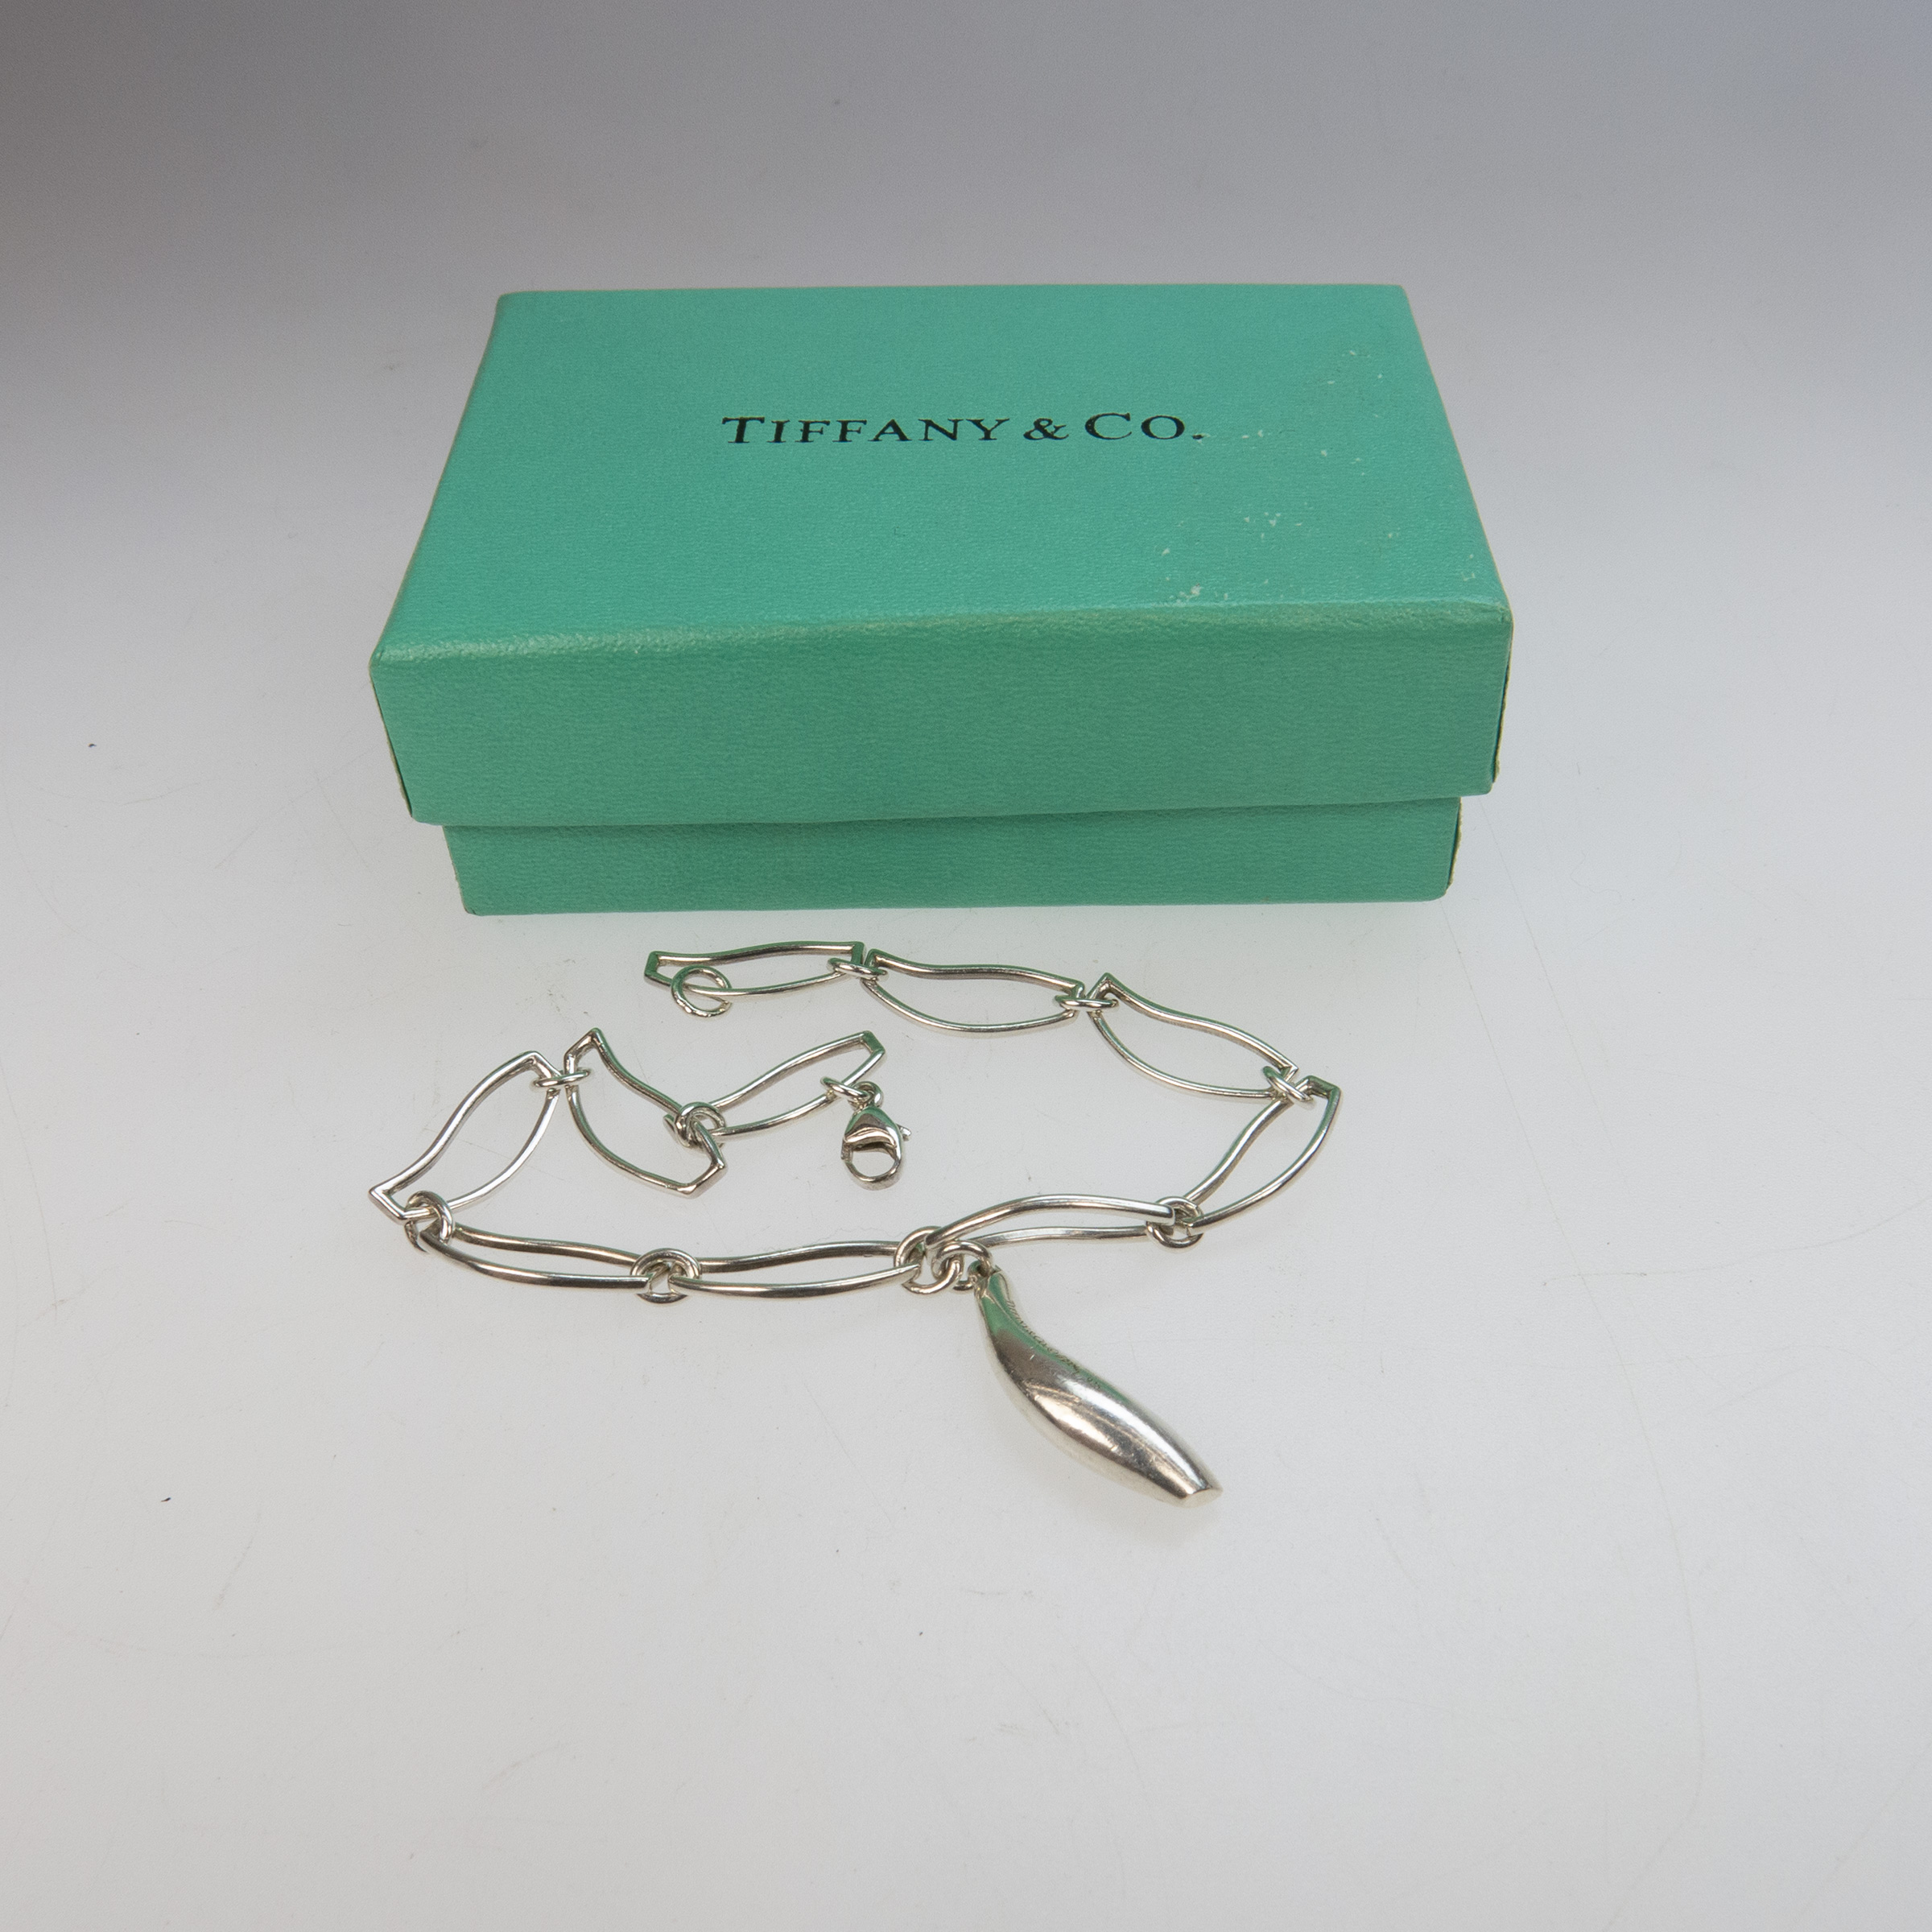 Tiffany & Co. Frank Geary Sterling Silver Bracelet